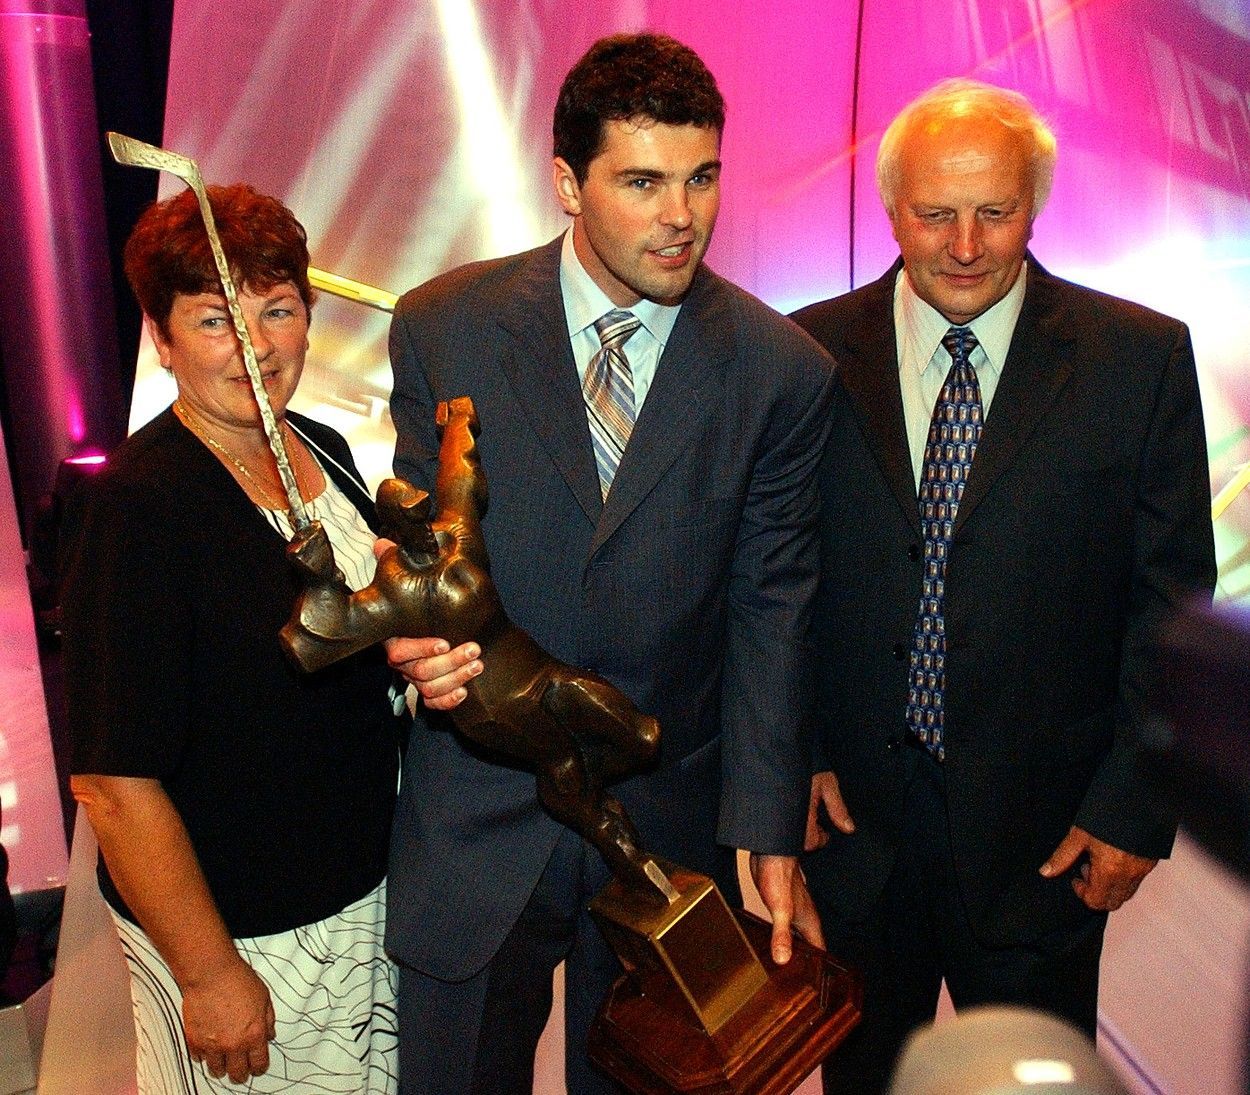 Jaromír Jágr s rodiči, Zlatá hokejka 2005